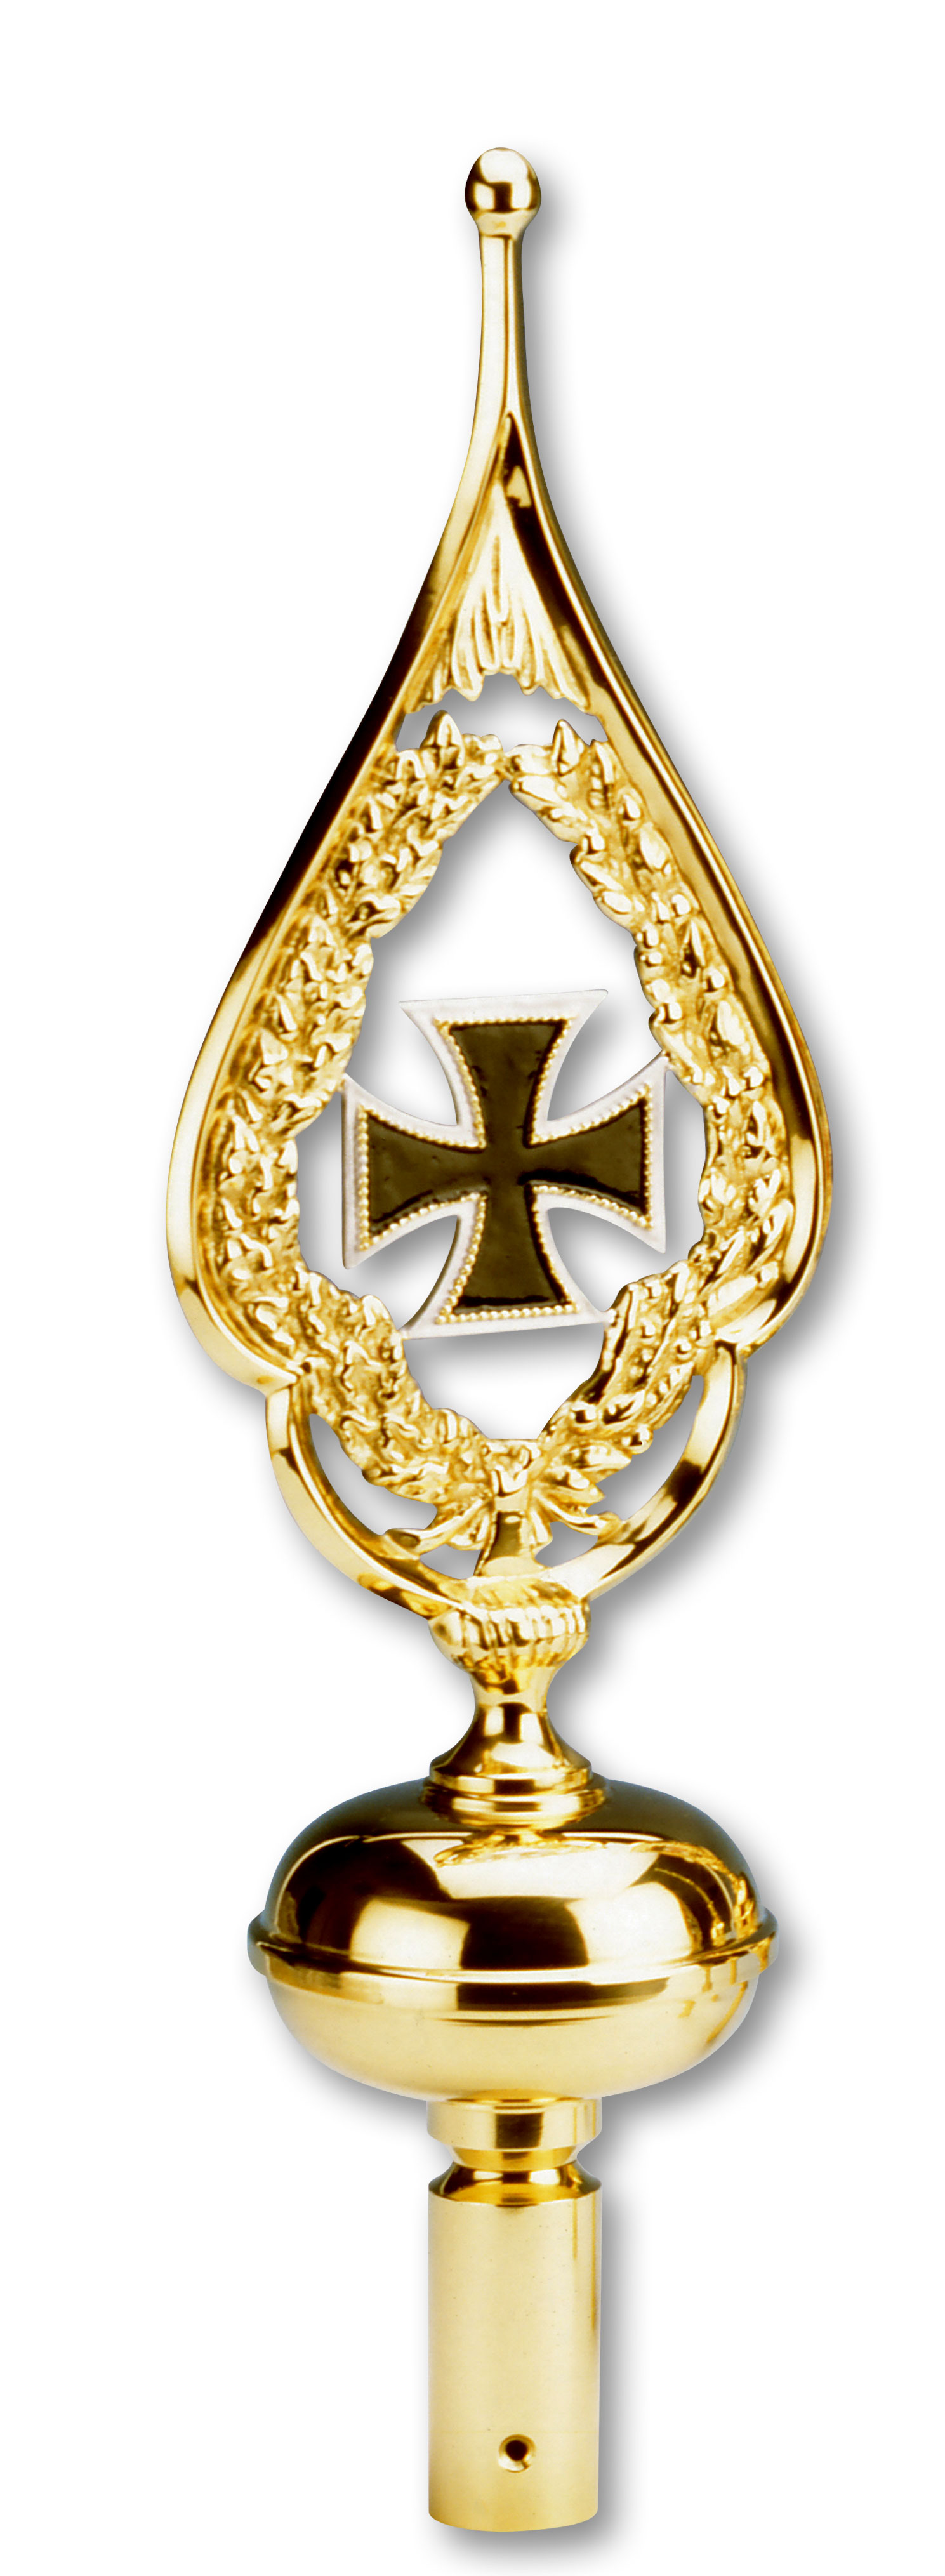 Eisernes Kreuz in Schwarz in einem goldfarbenen Rahmen. Der Rahmen ist goldfarben und läuft oben spitz zu.